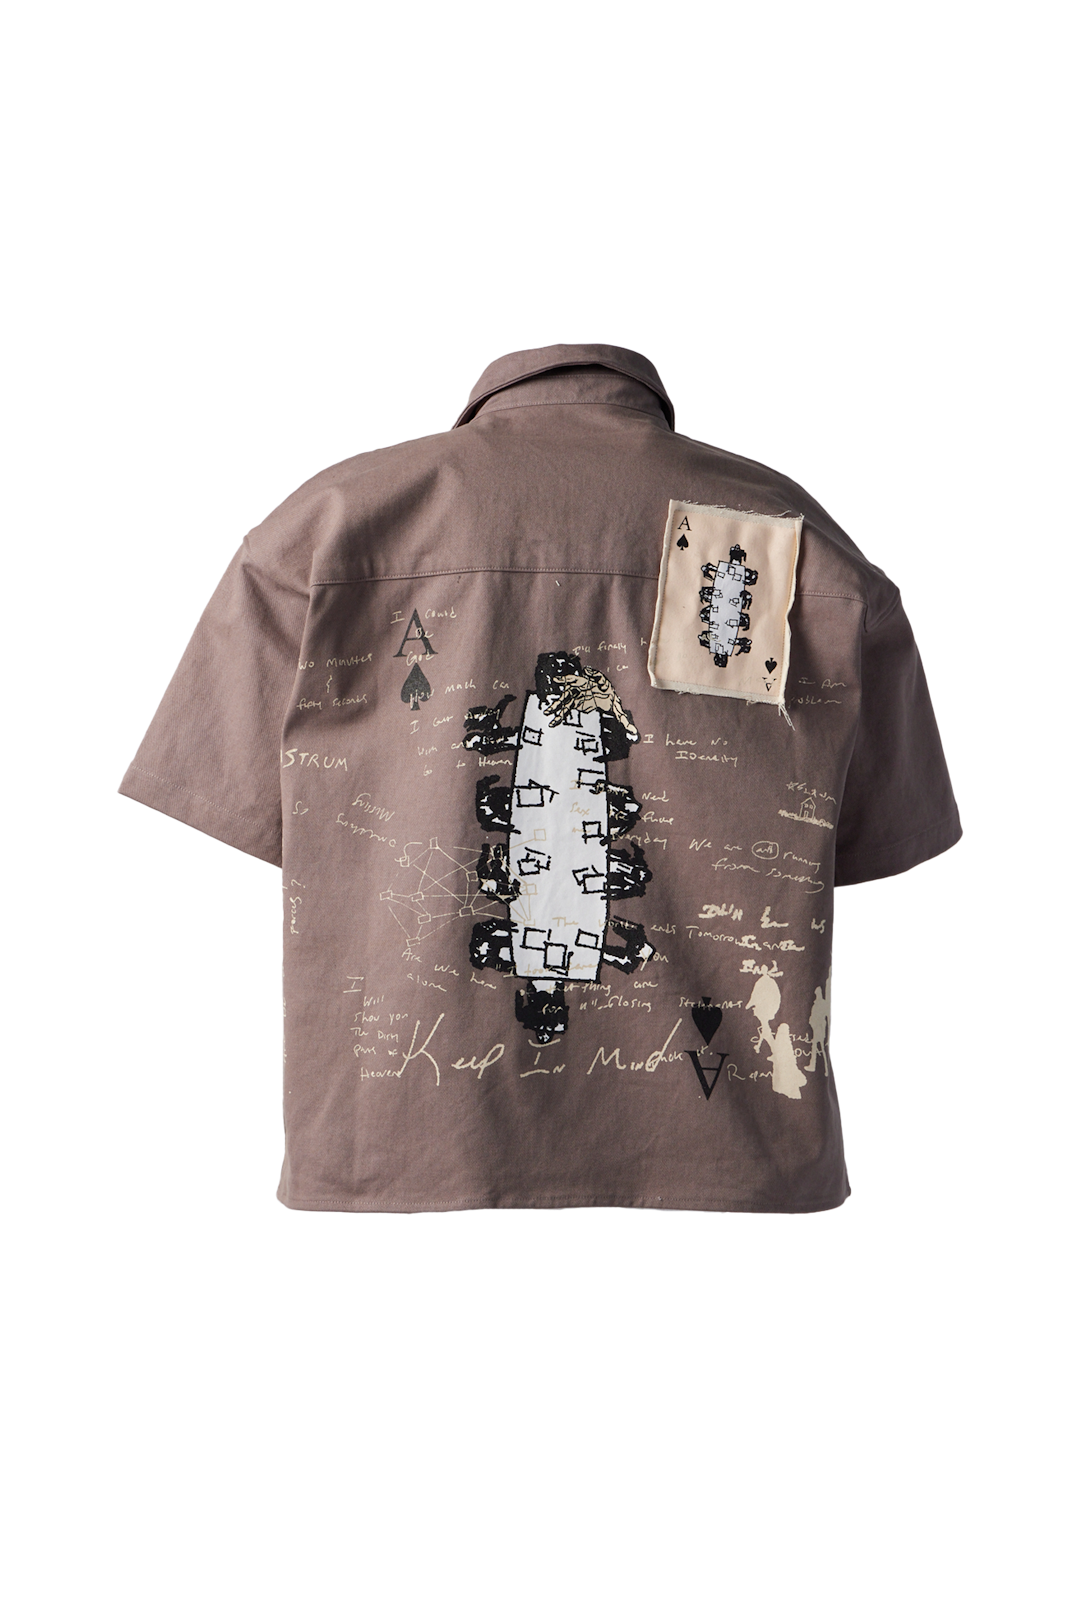 ASTRUM - Spade Shirt product image